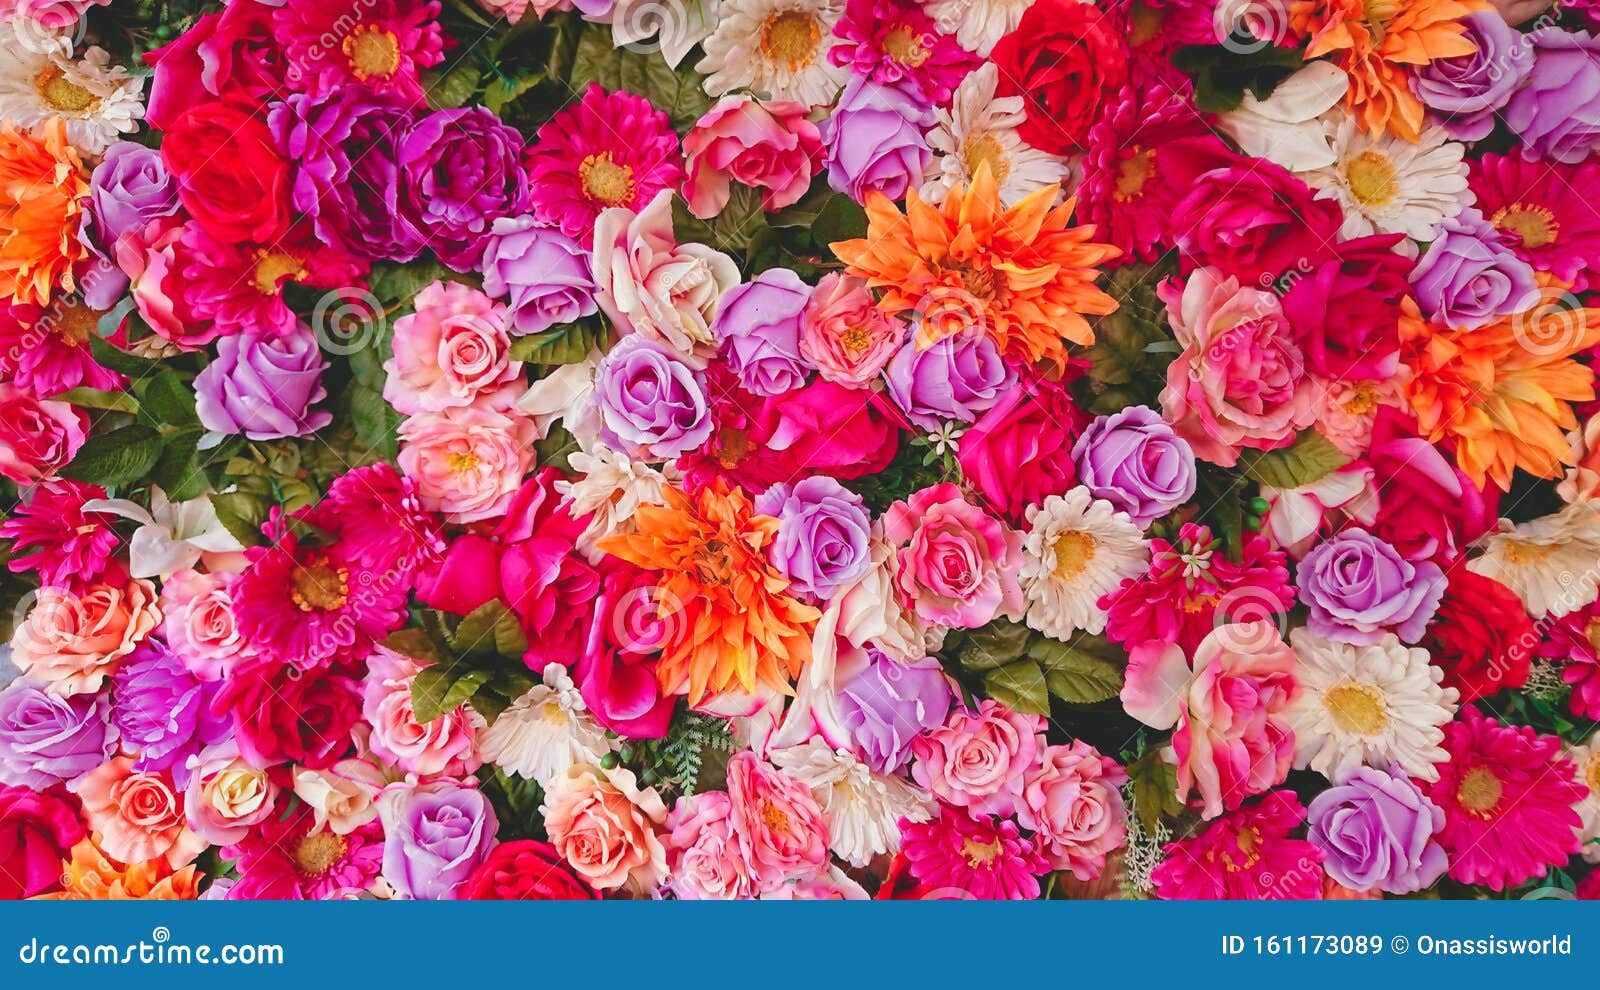 Màu sắc hòa quyện trong những bông hoa ngập tràn là sự đa dạng của sự sống. Hãy để mắt bạn tận hưởng chúng qua bức ảnh đầy sáng tạo này.